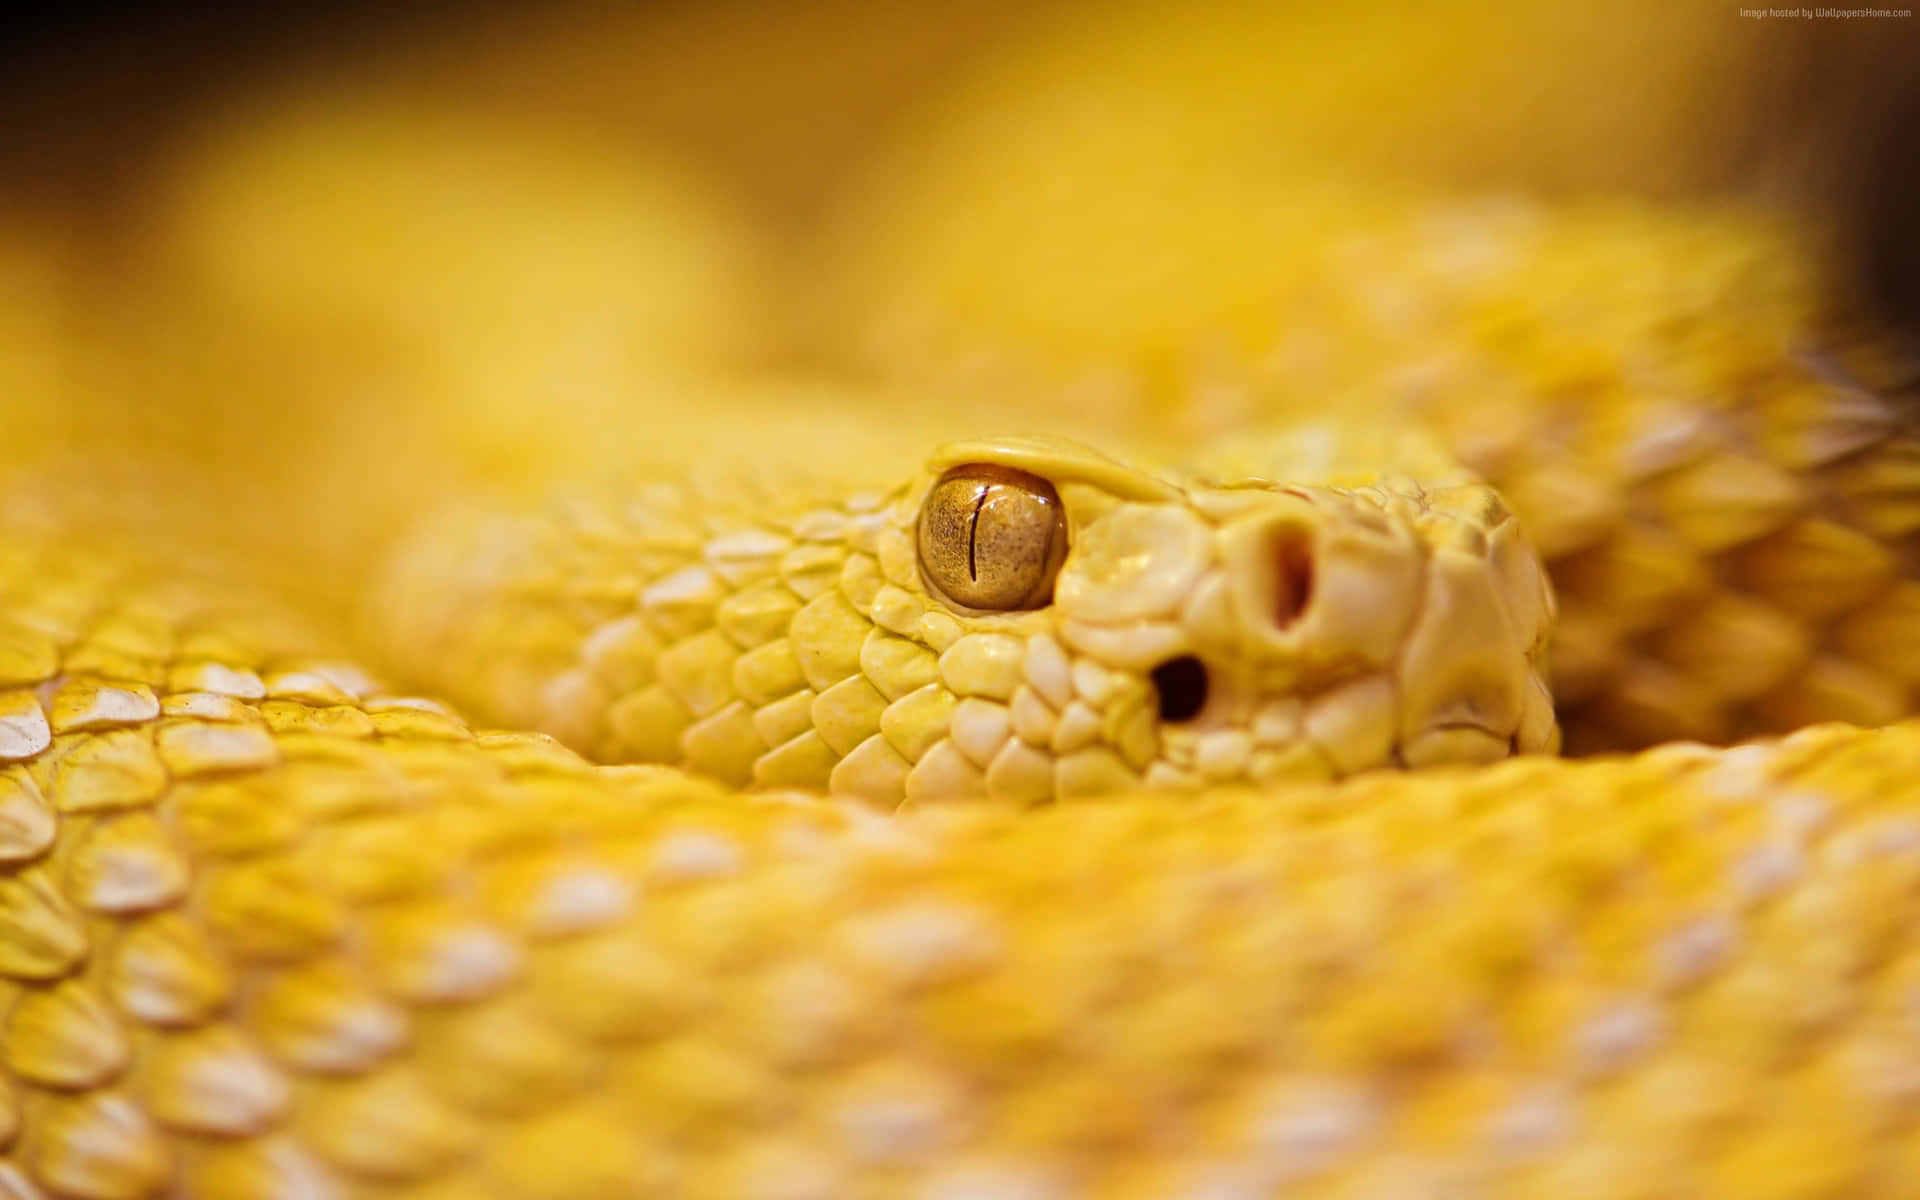 Imagende Los Ojos De Una Serpiente Amarilla